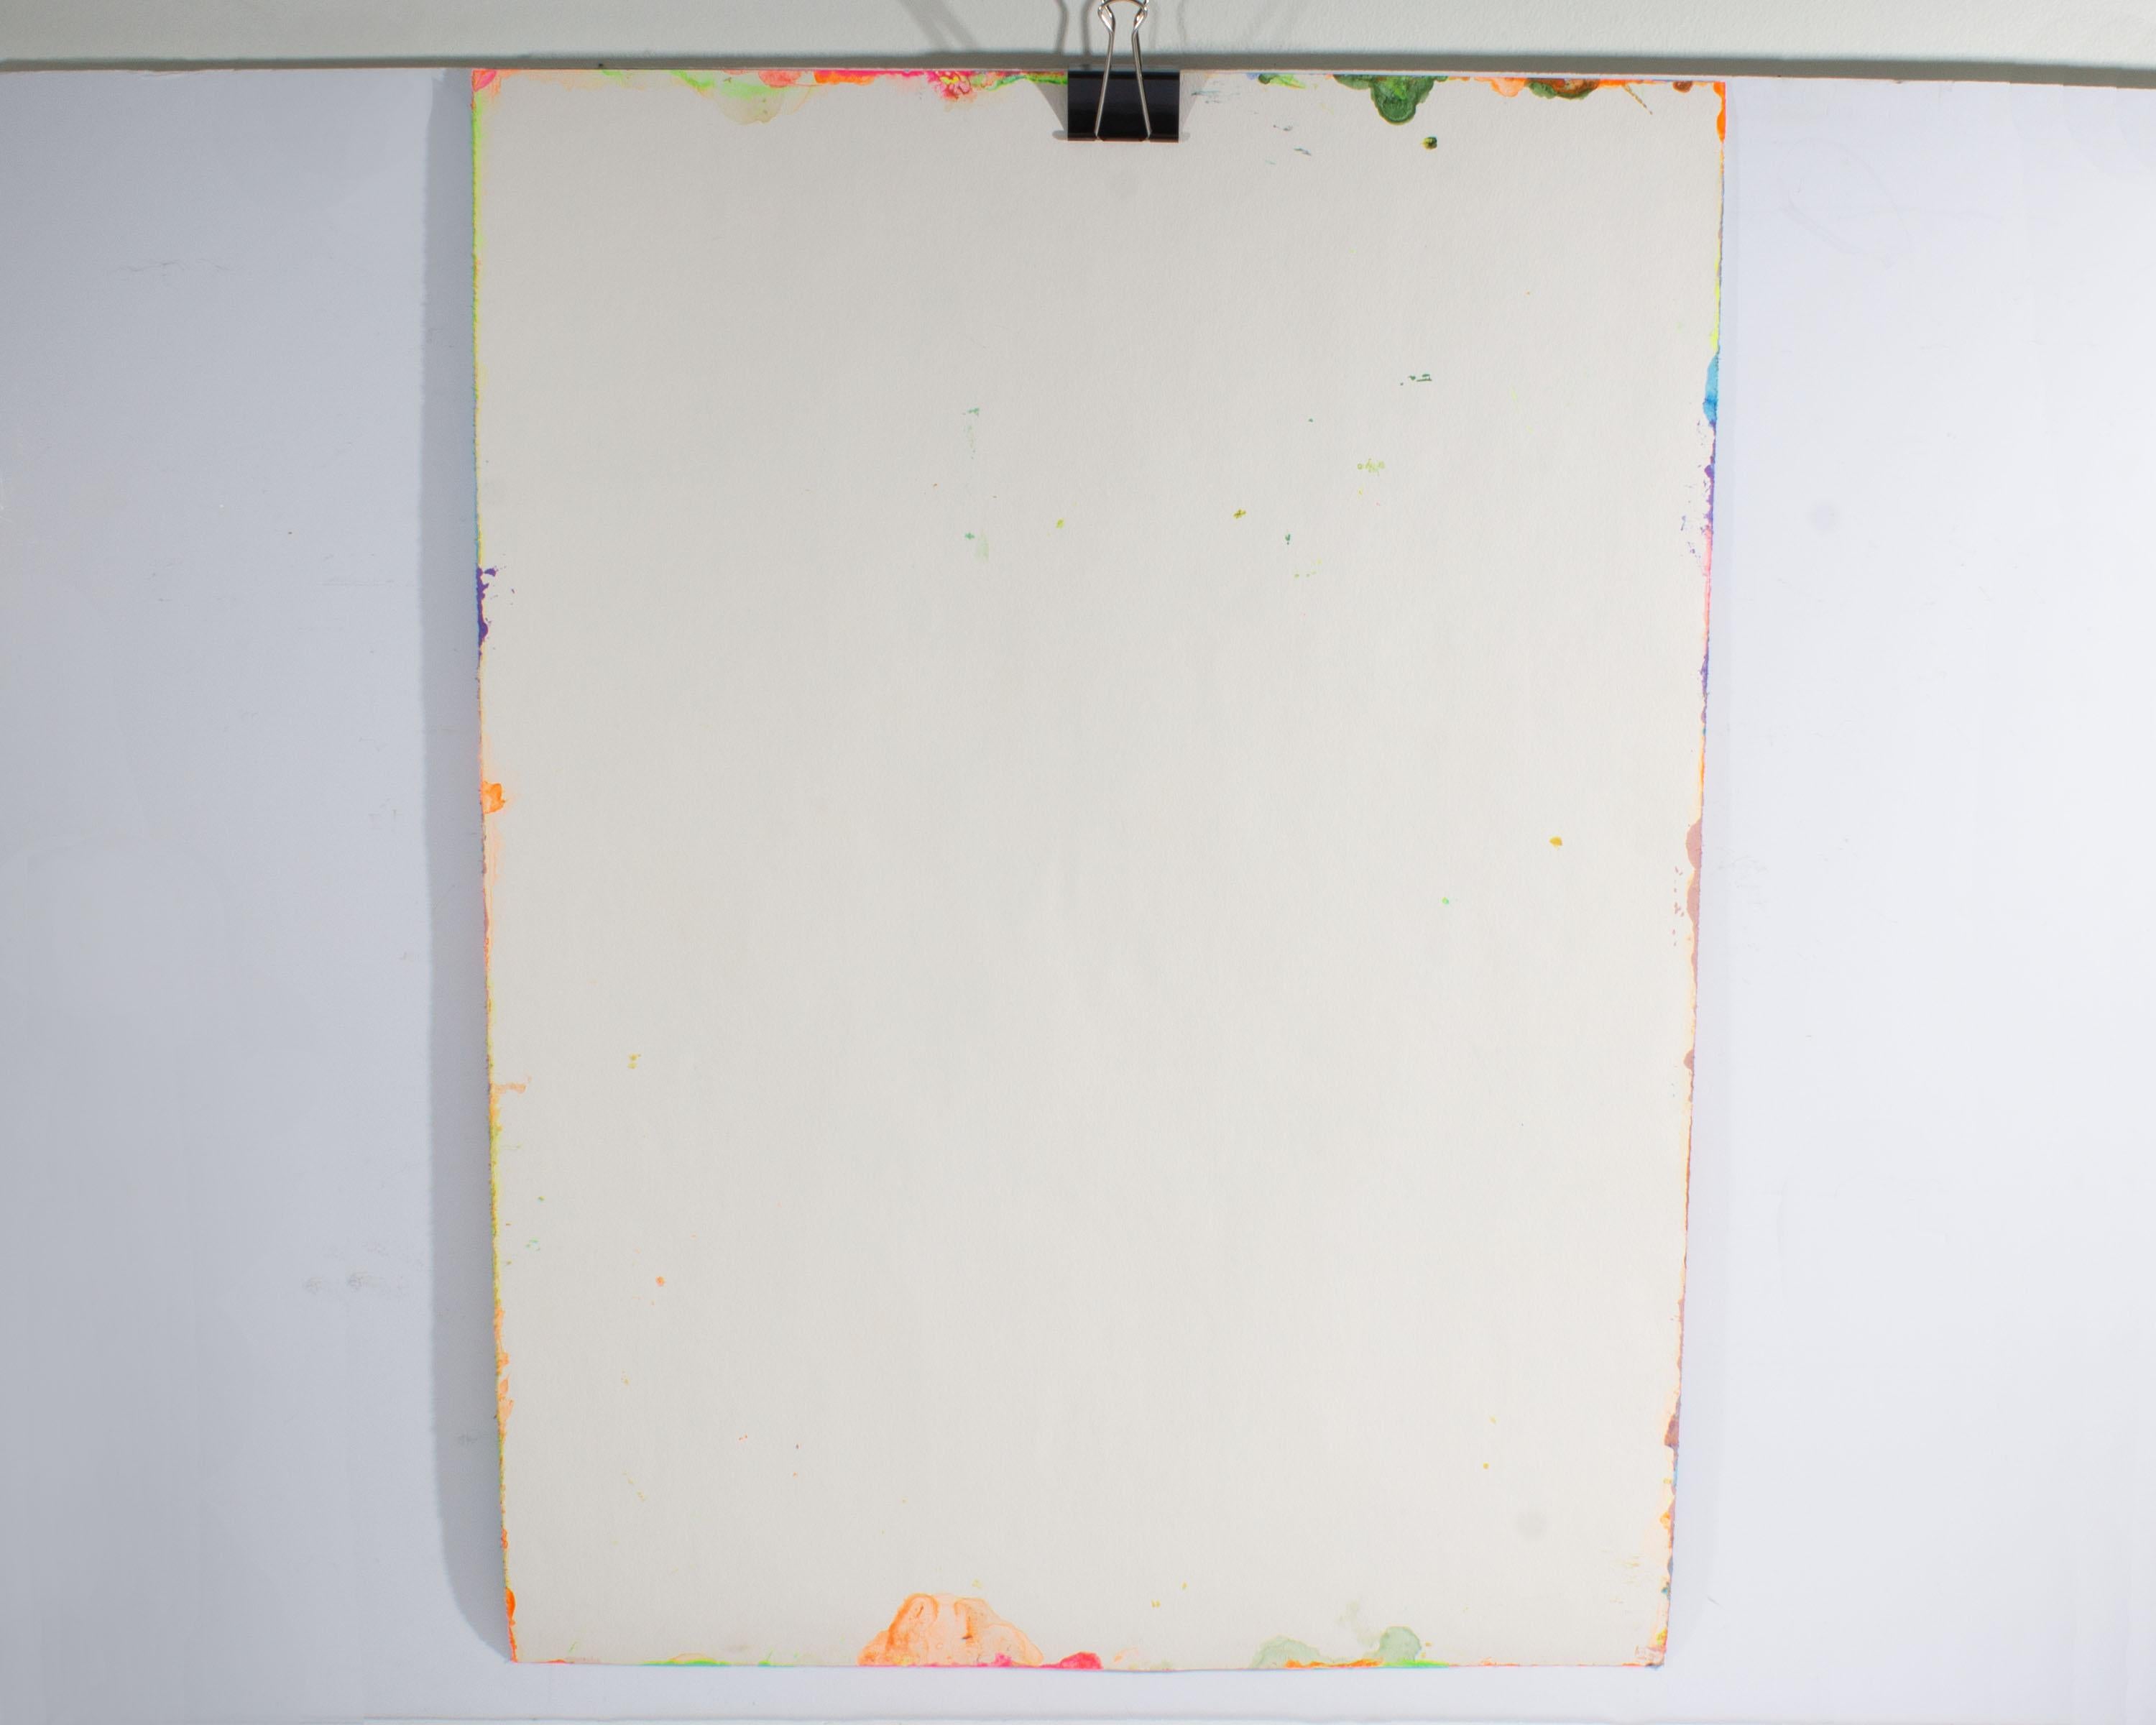 Ein abstraktes Landschaftsgemälde in Acryl auf Papier aus den 1980er Jahren des amerikanischen Künstlers Harry Hilson (1935-2004). Gestische Linien fügen sich zu einer lebendigen abstrakten Landschaft mit einer violetten Horizontlinie im Hintergrund